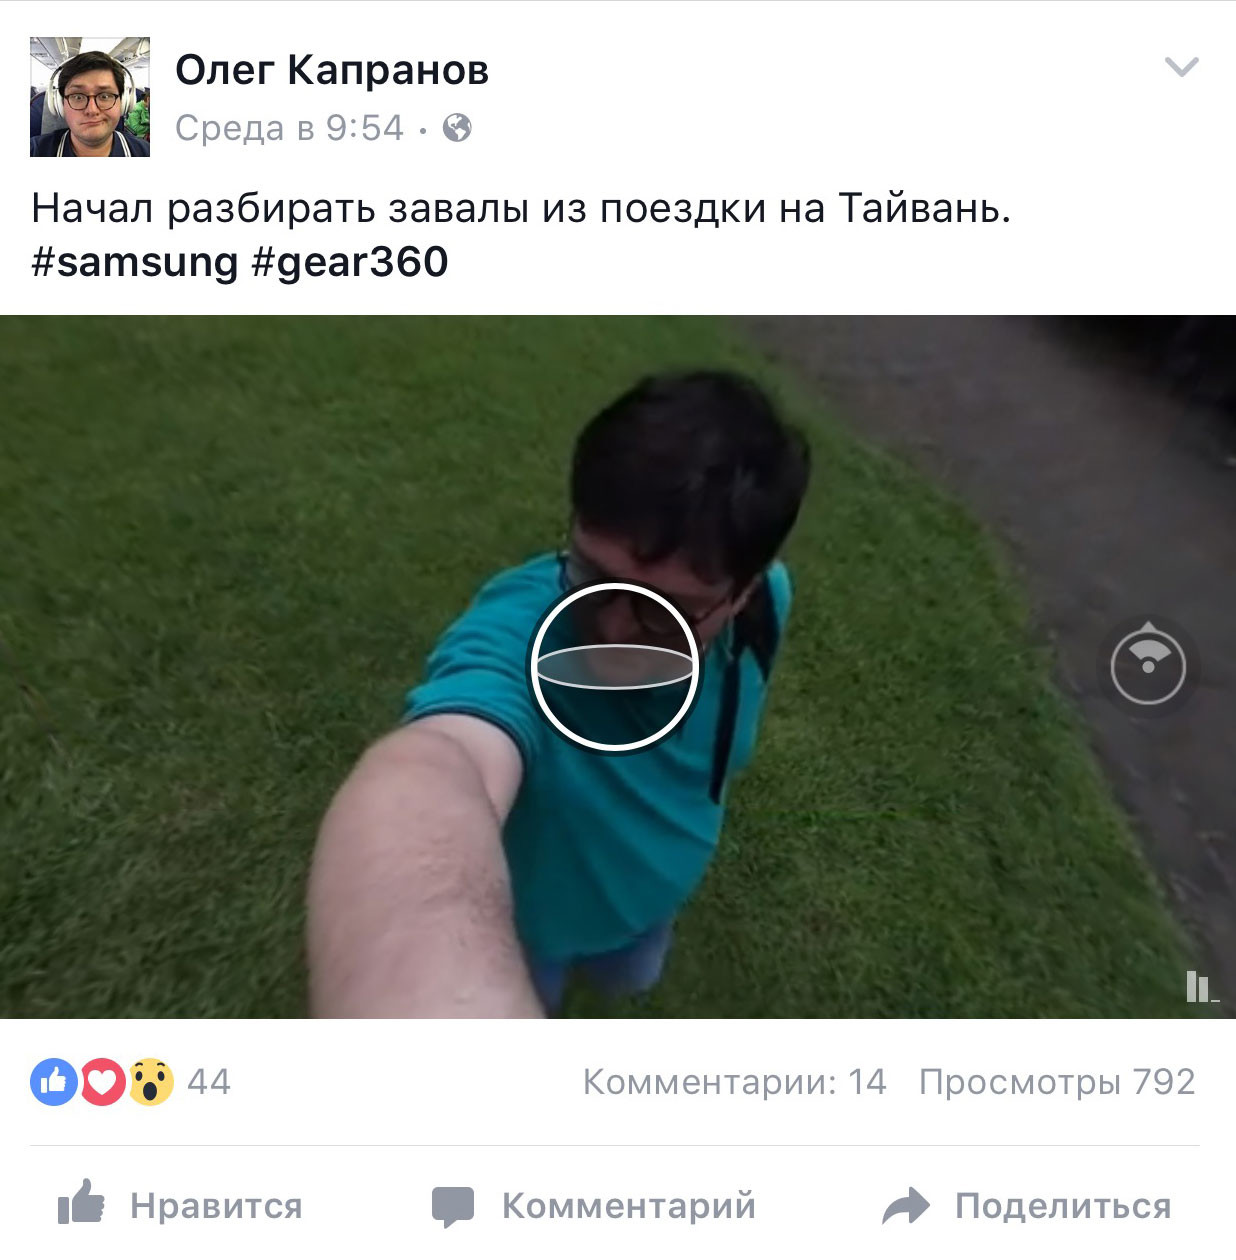 Как опубликовать в Facebook 360-градусную фотопанораму? 